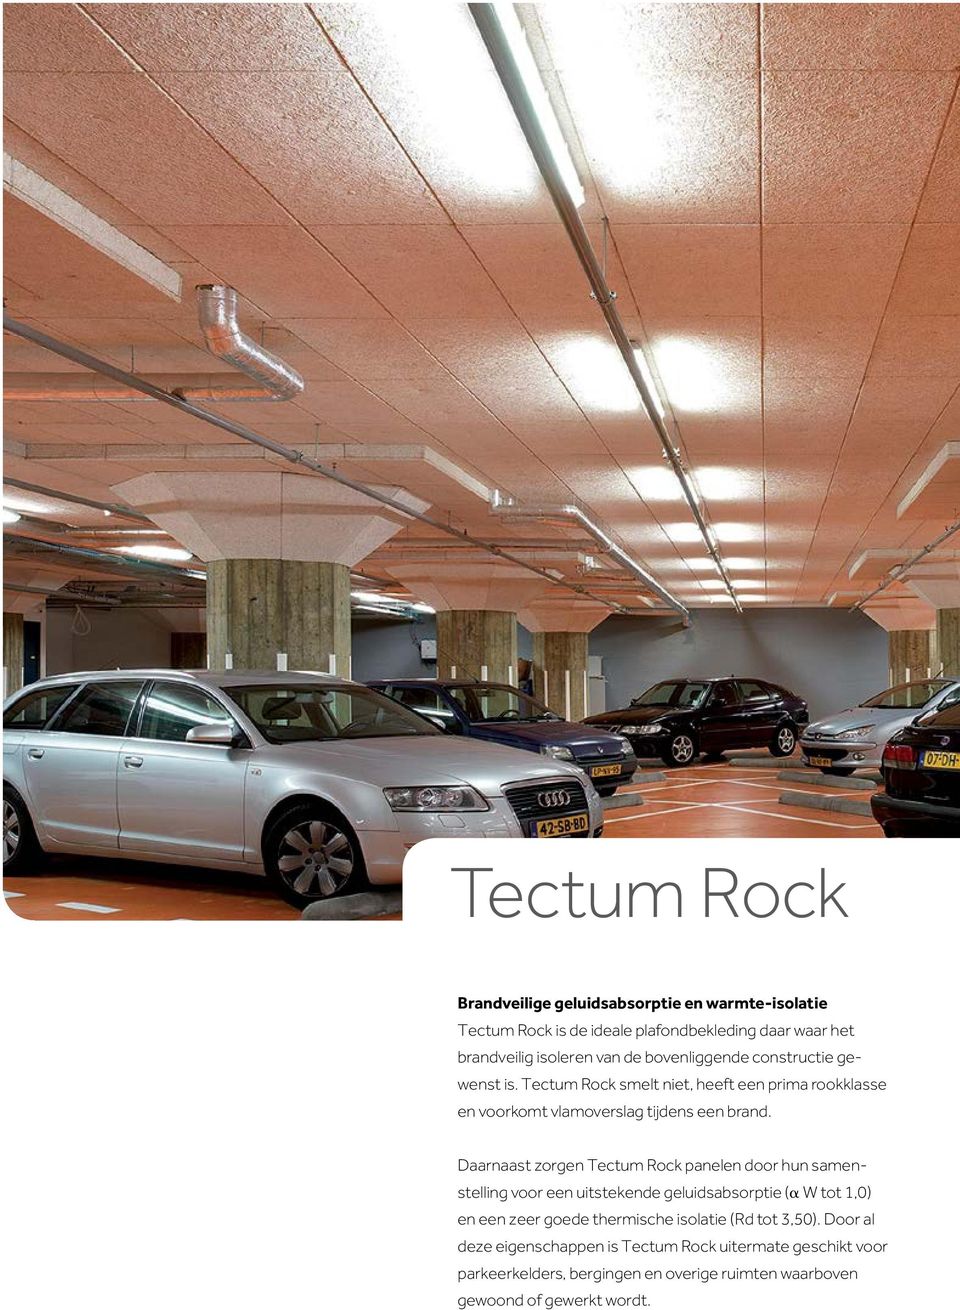 Daarnaast zorgen Tectum Rock panelen door hun samenstelling voor een uitstekende geluidsabsorptie (α W tot 1,0) en een zeer goede thermische